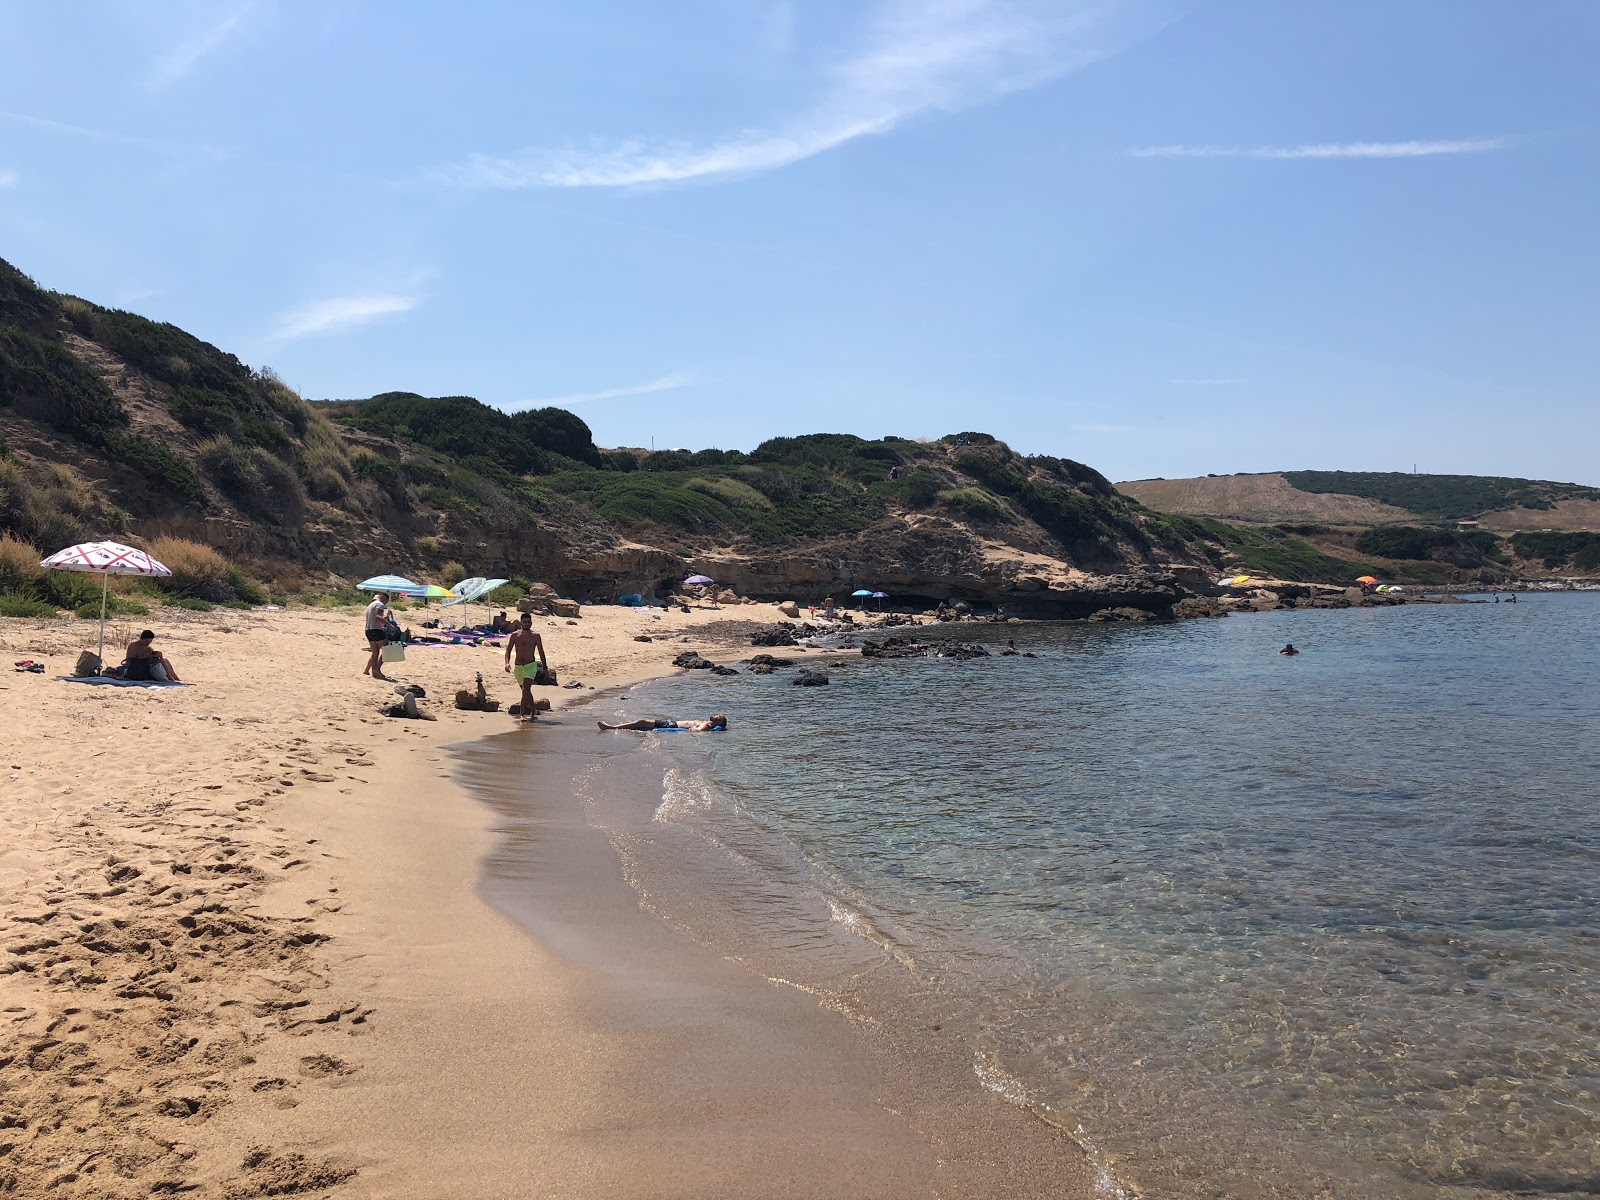 Photo of Spiaggia di Punta Perruledda Nord located in natural area